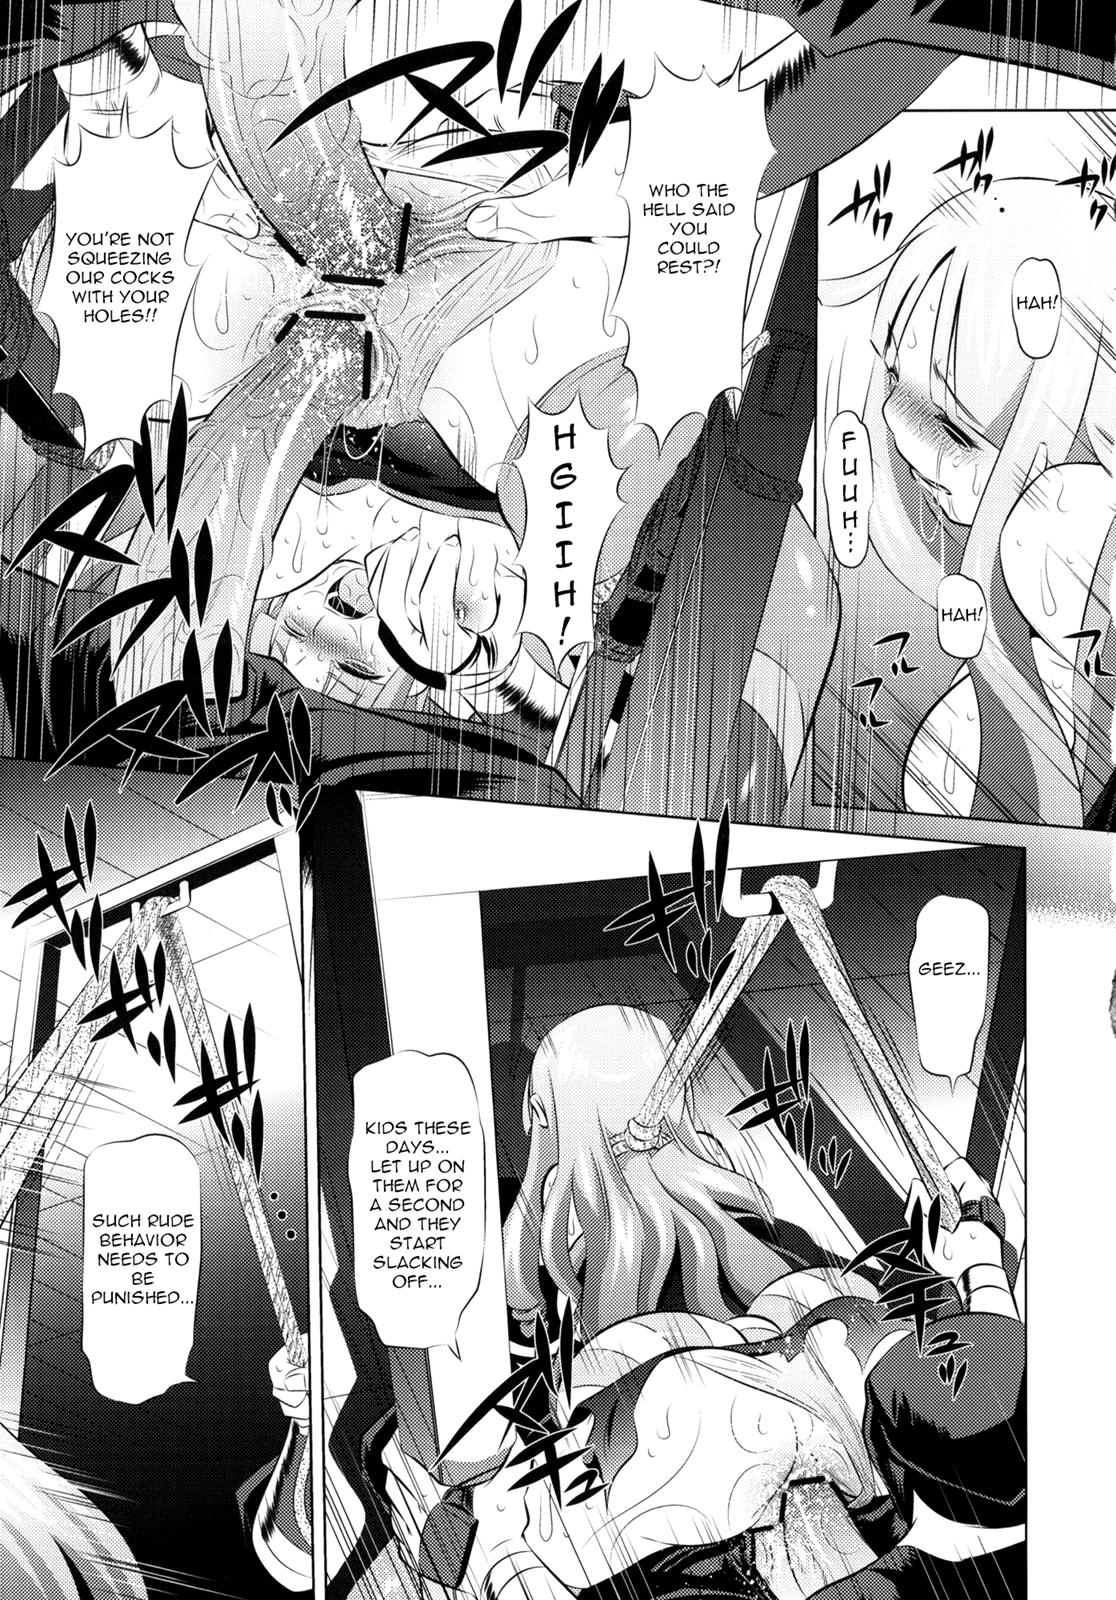 Togame vs Horse hentai manga picture 10